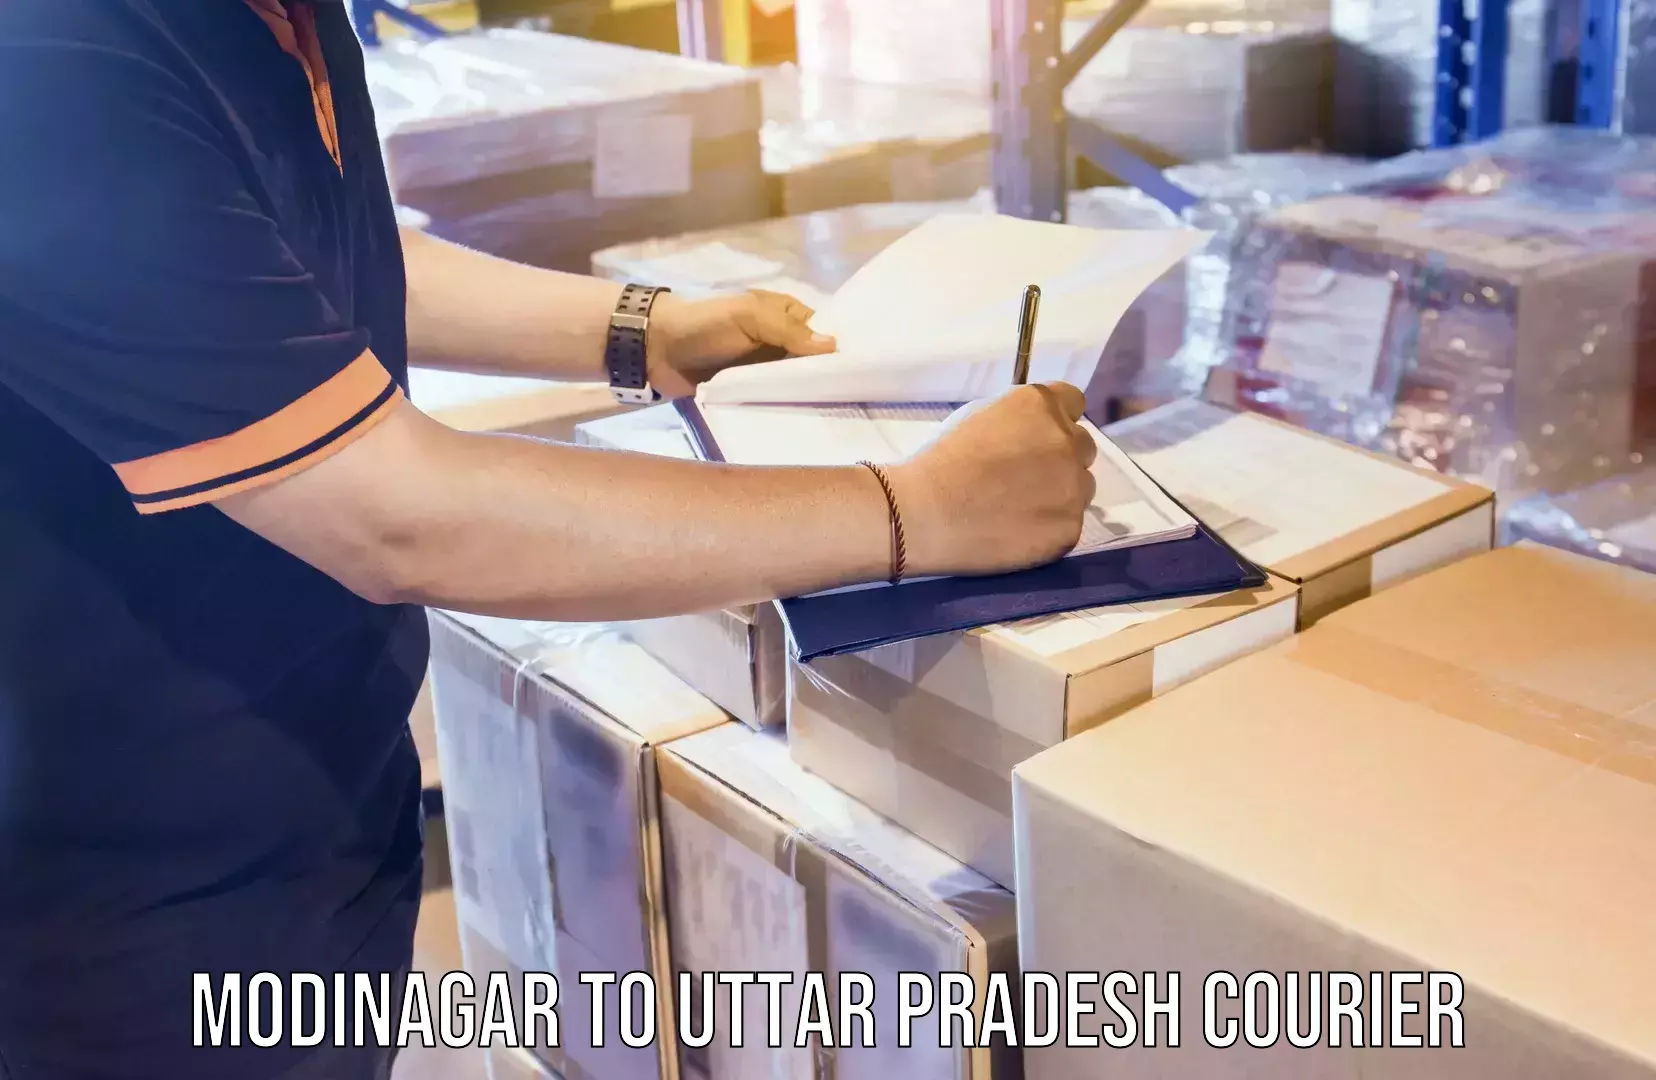 Home moving specialists Modinagar to Uttar Pradesh